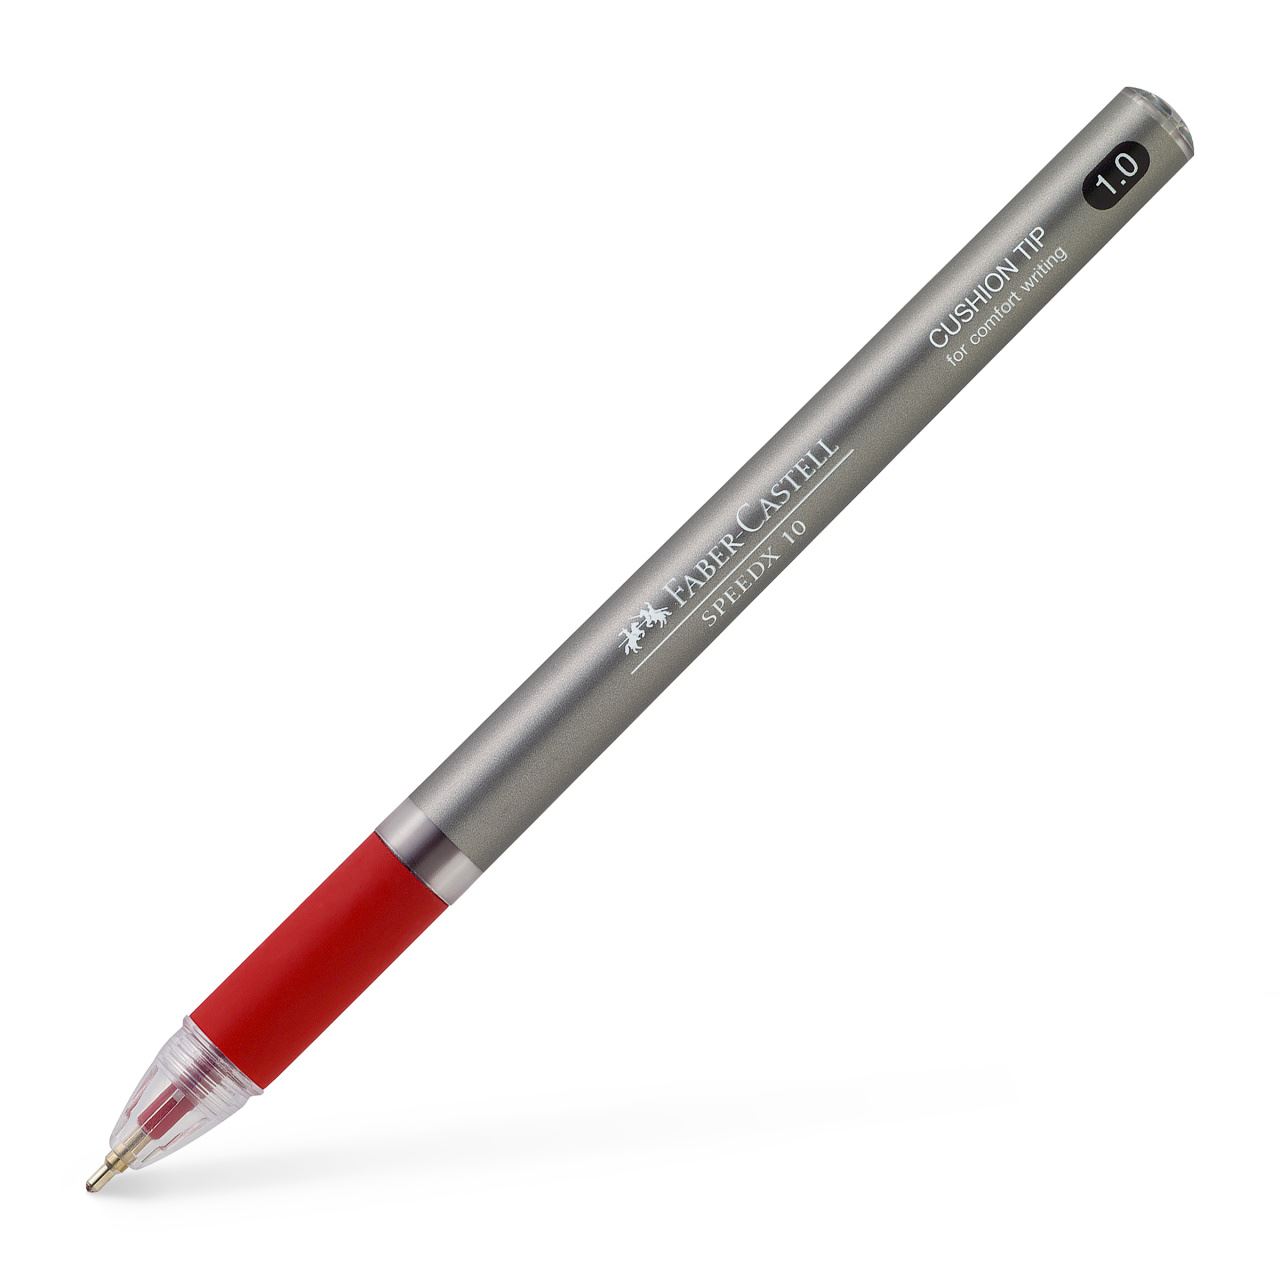 Faber-Castell - Kuličkové pero SPEEDX 1.0mm, červená